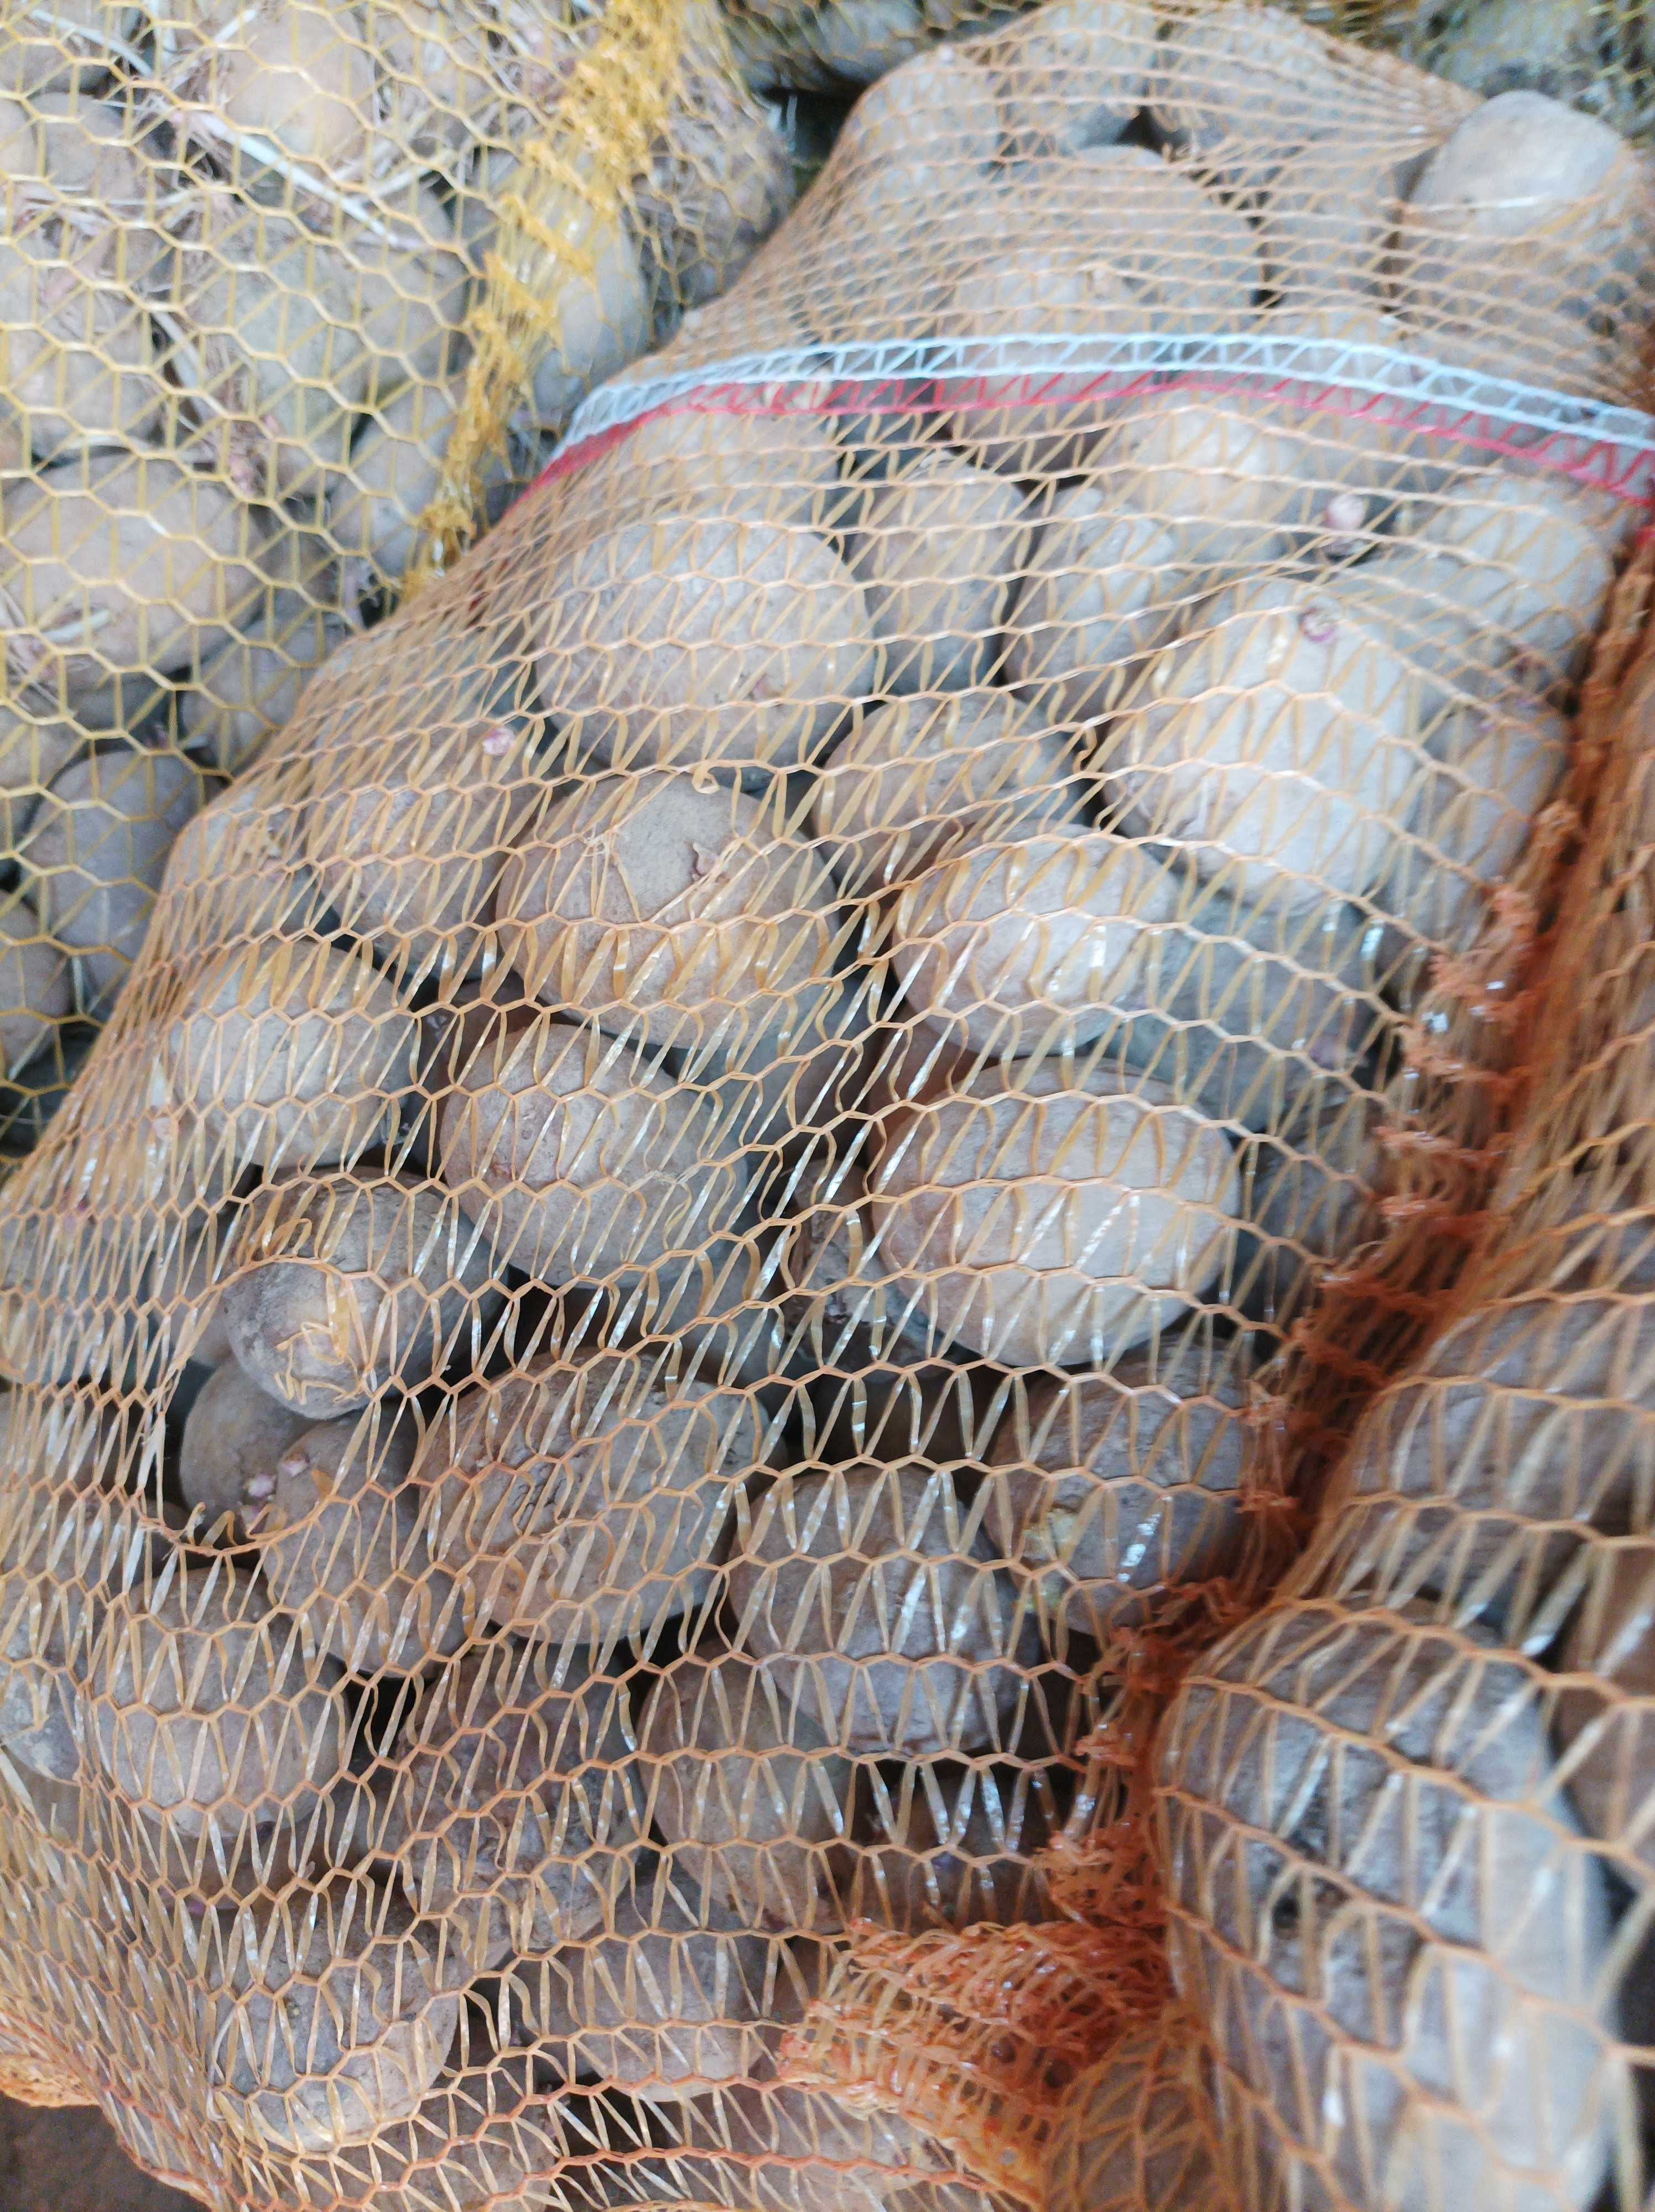 Ziemniaki odmiany Soraya Jurka oraz denara